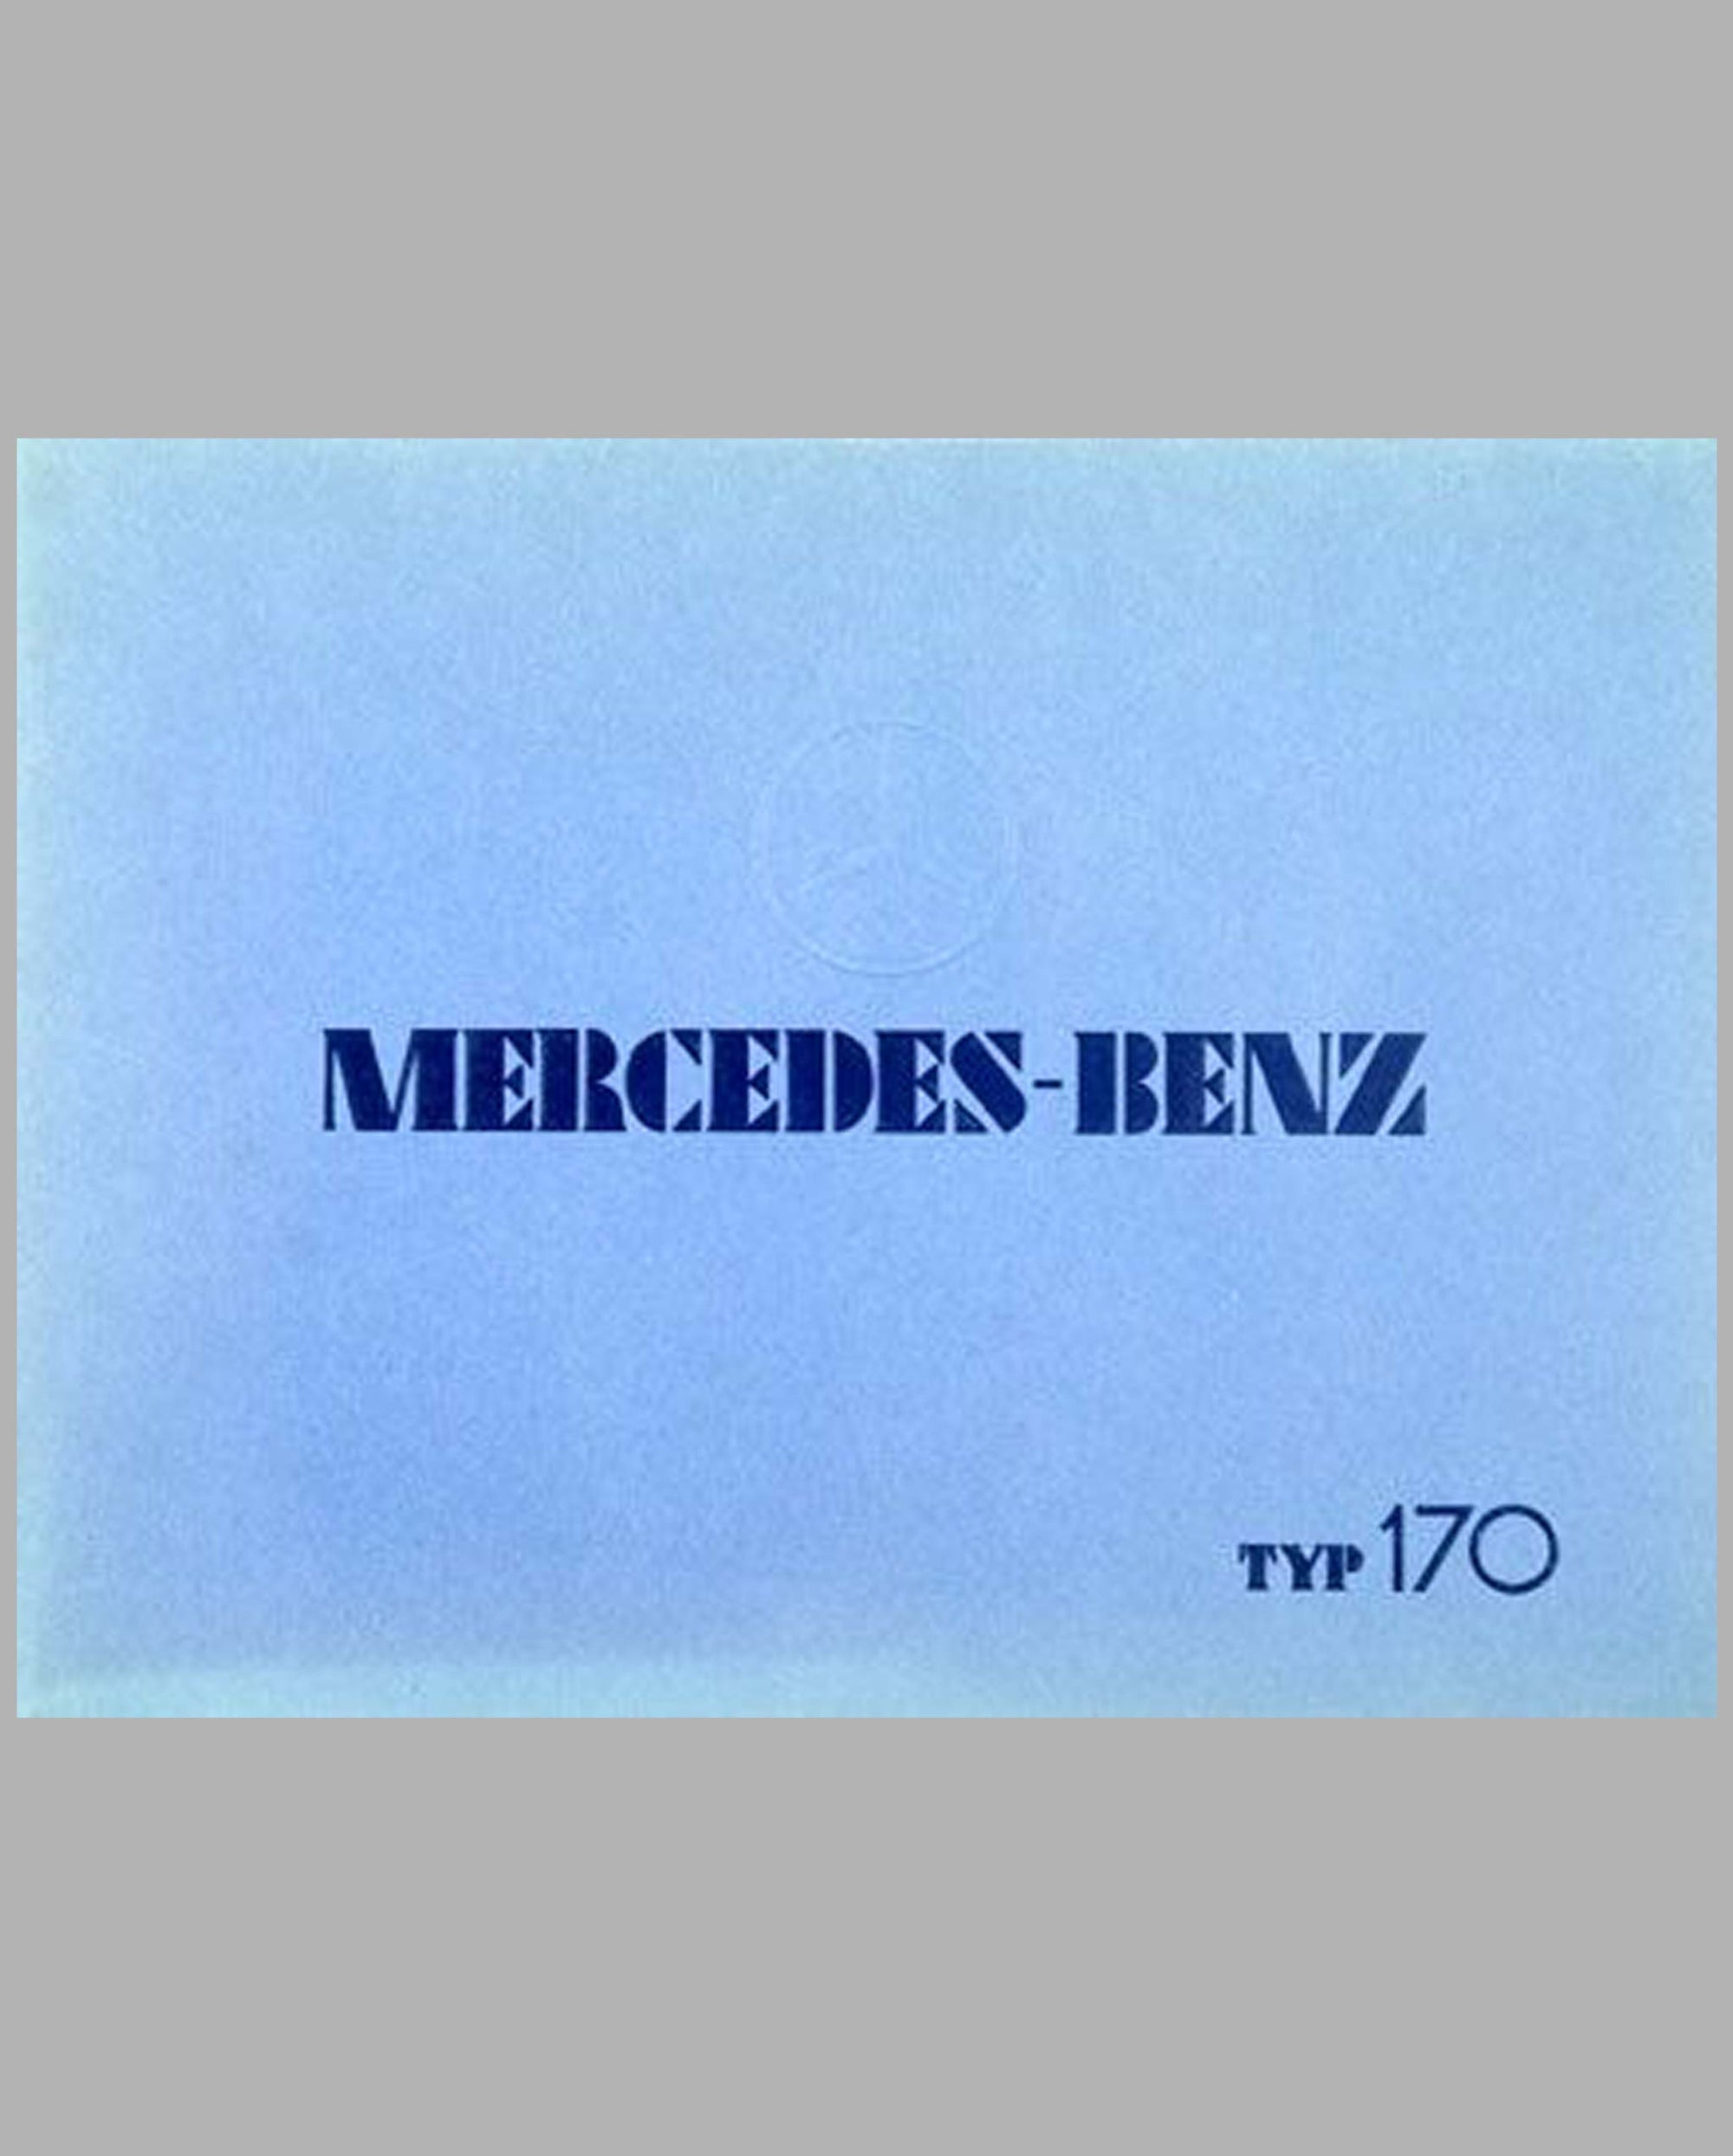 Mercedes-Benz Type 170 prestige color catalog factory reprint